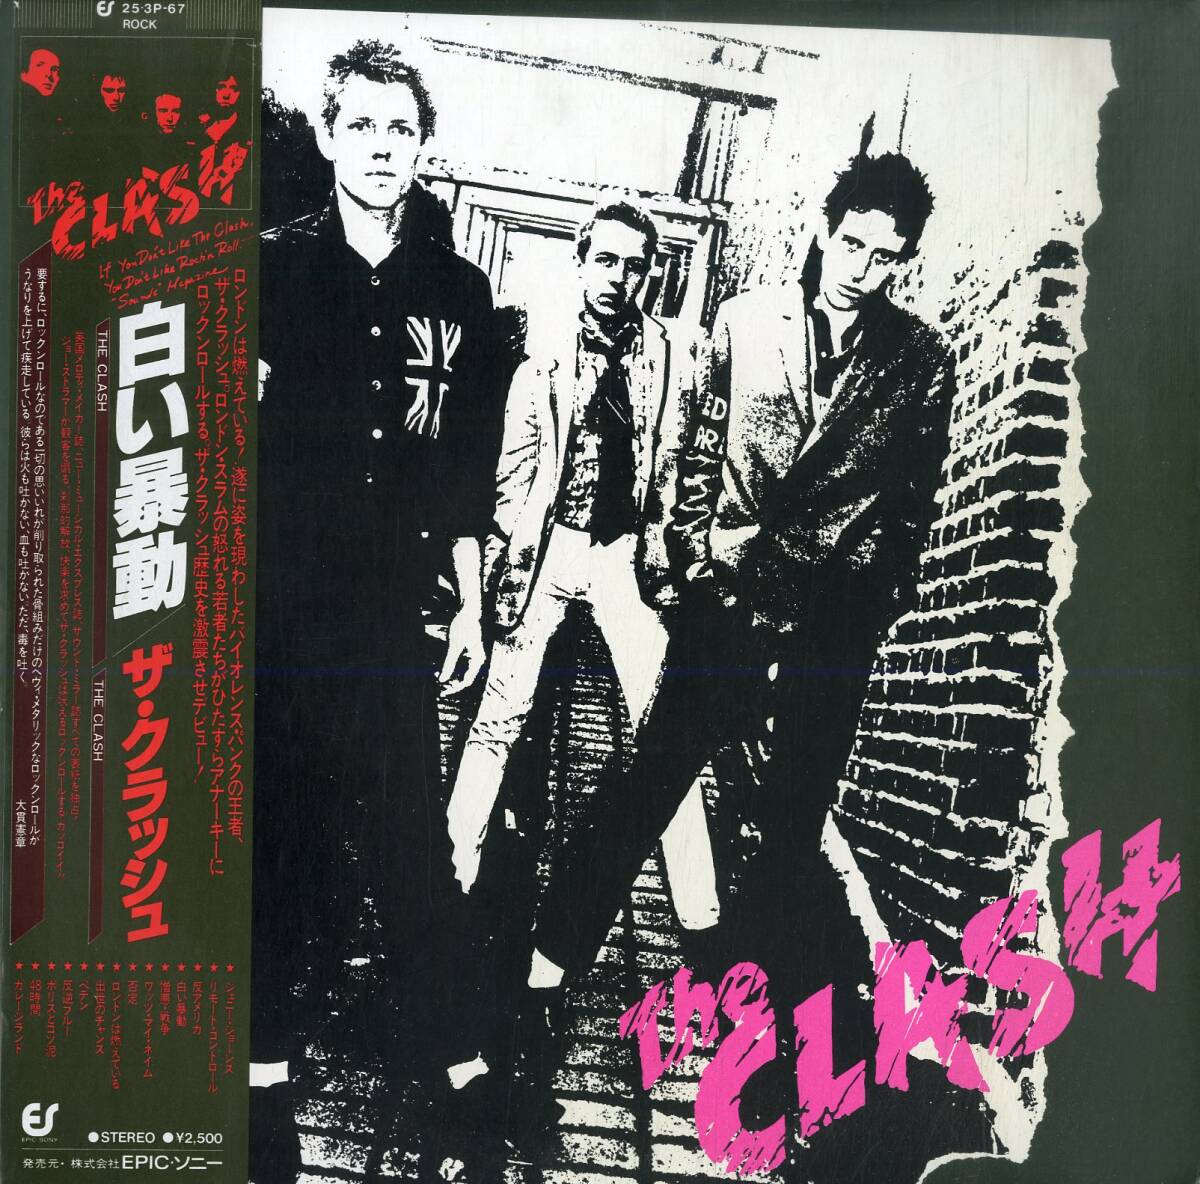 A00594293/LP/ザ・クラッシュ (THE CLASH)「The Clash 白い暴動 (1979年・25-3P-67・パンク・PUNK)」の画像1